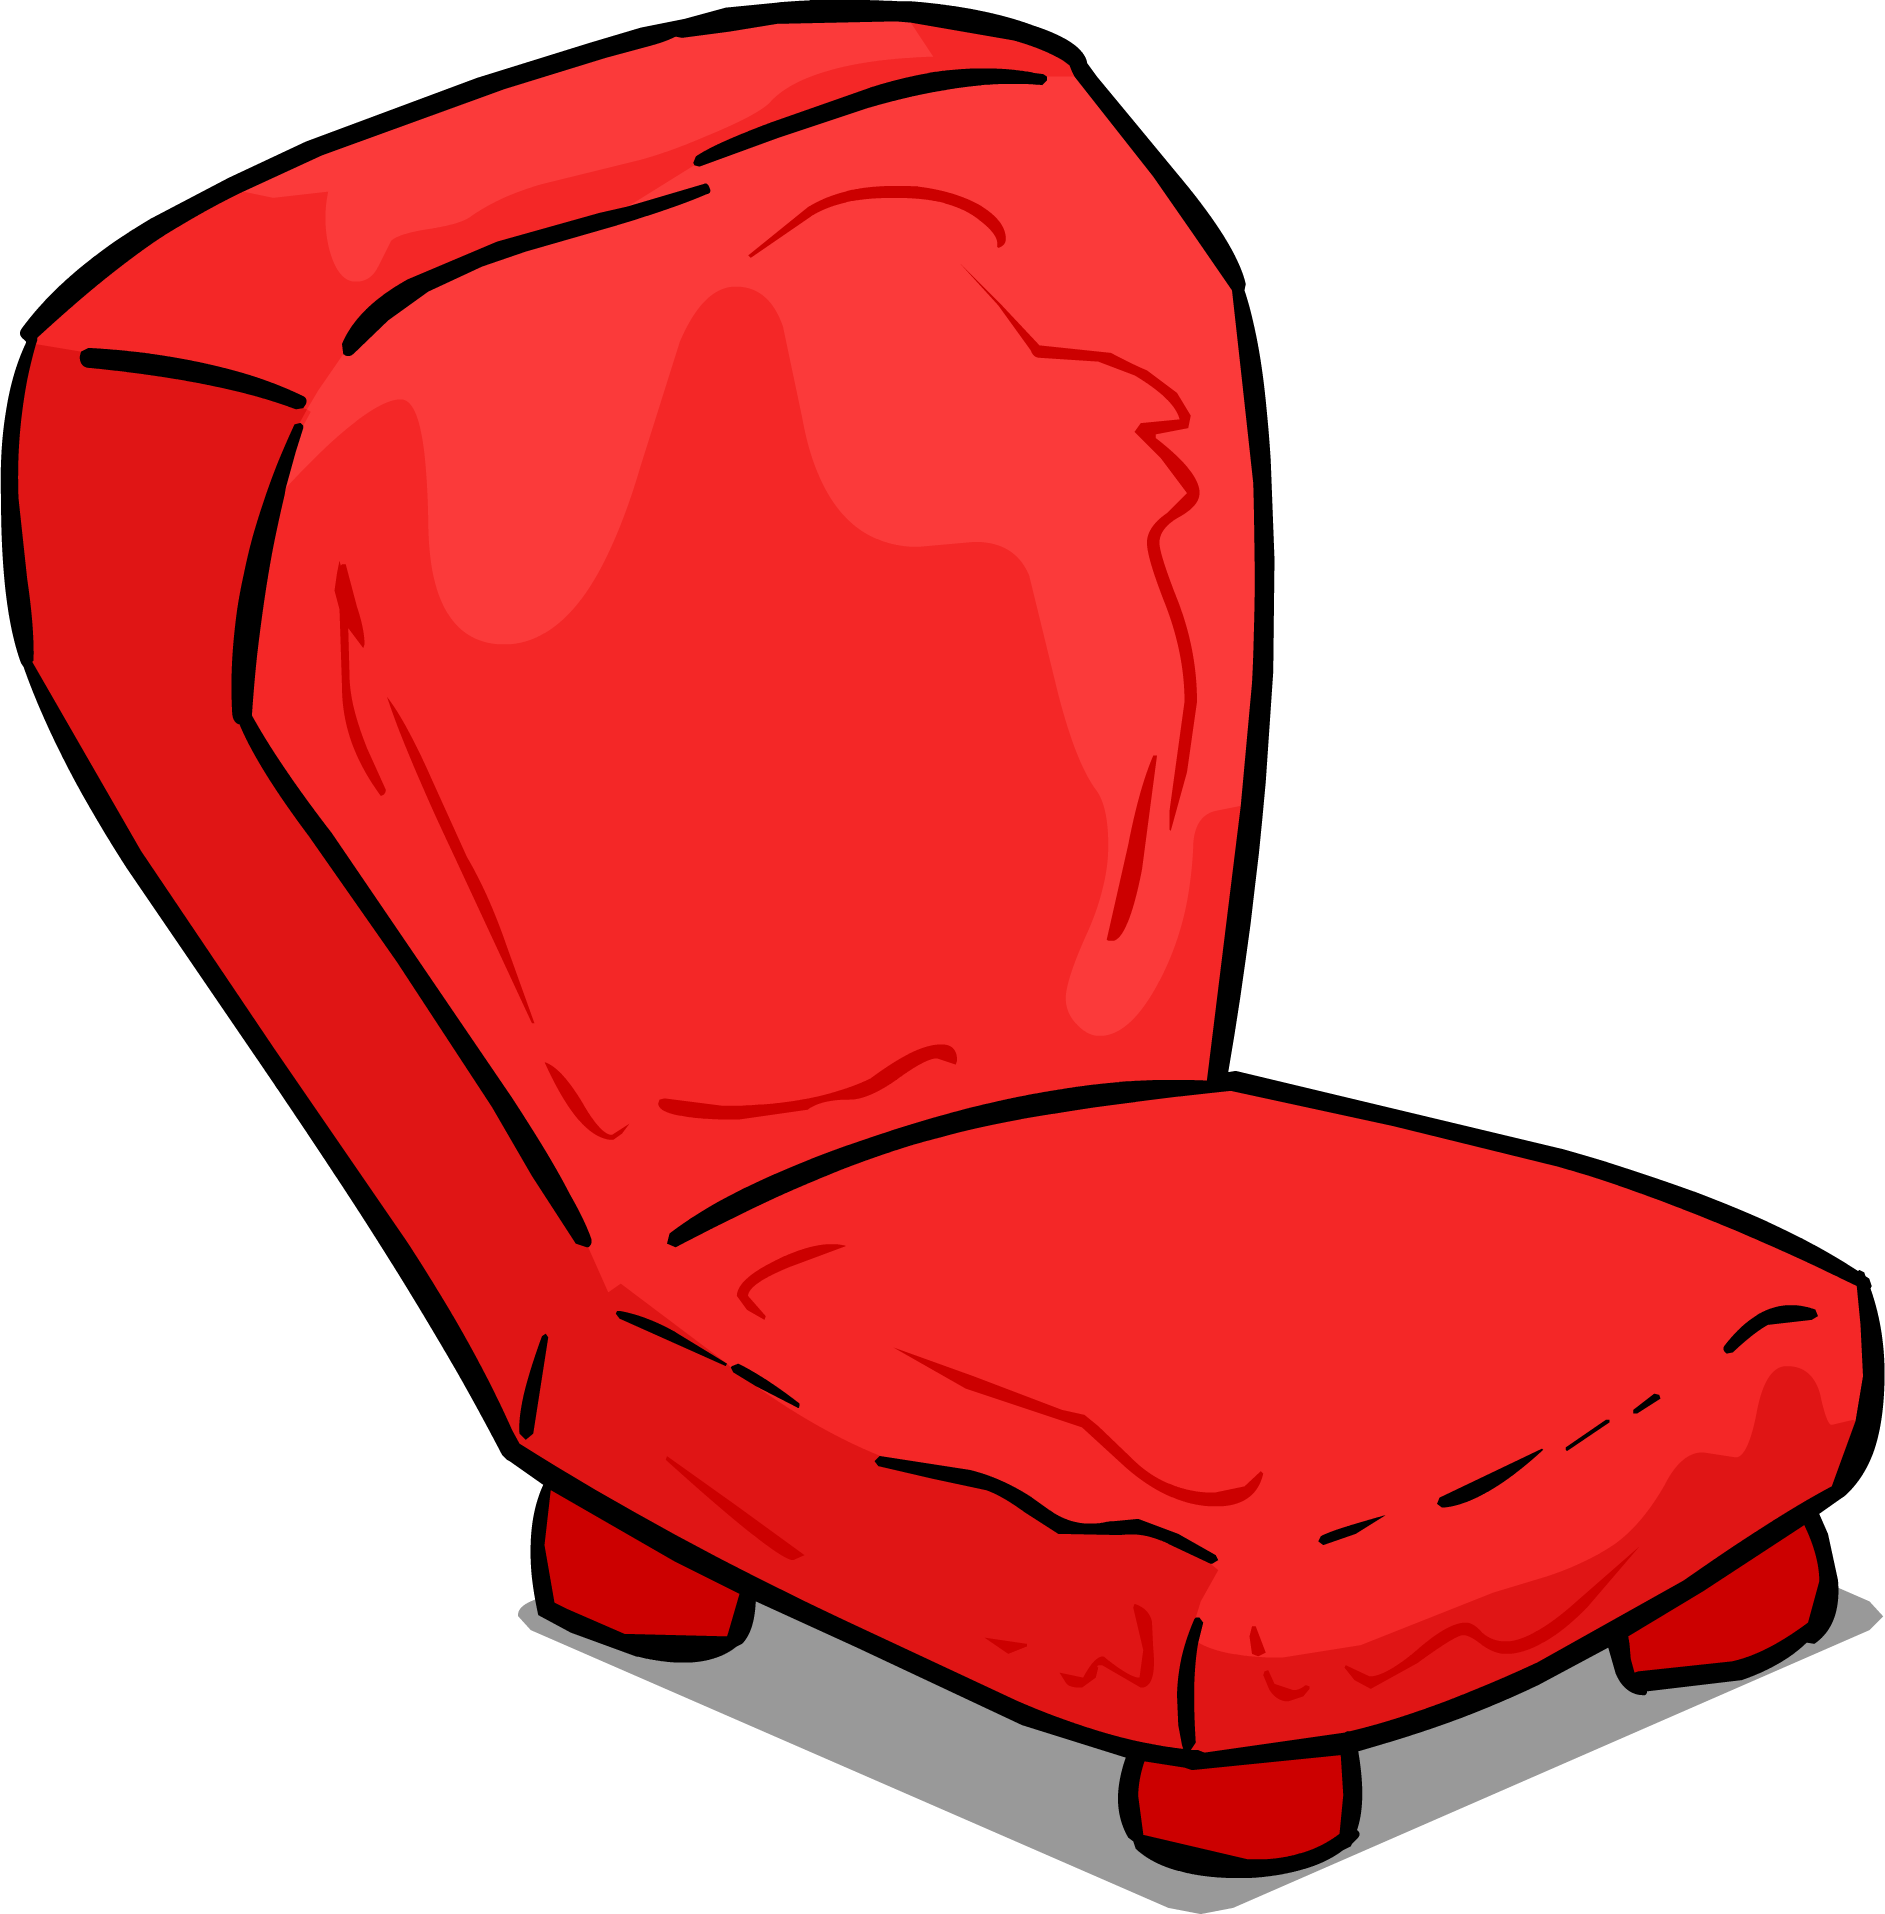 Image Stone Chair Club - Image Stone Chair Club (1885x1914)